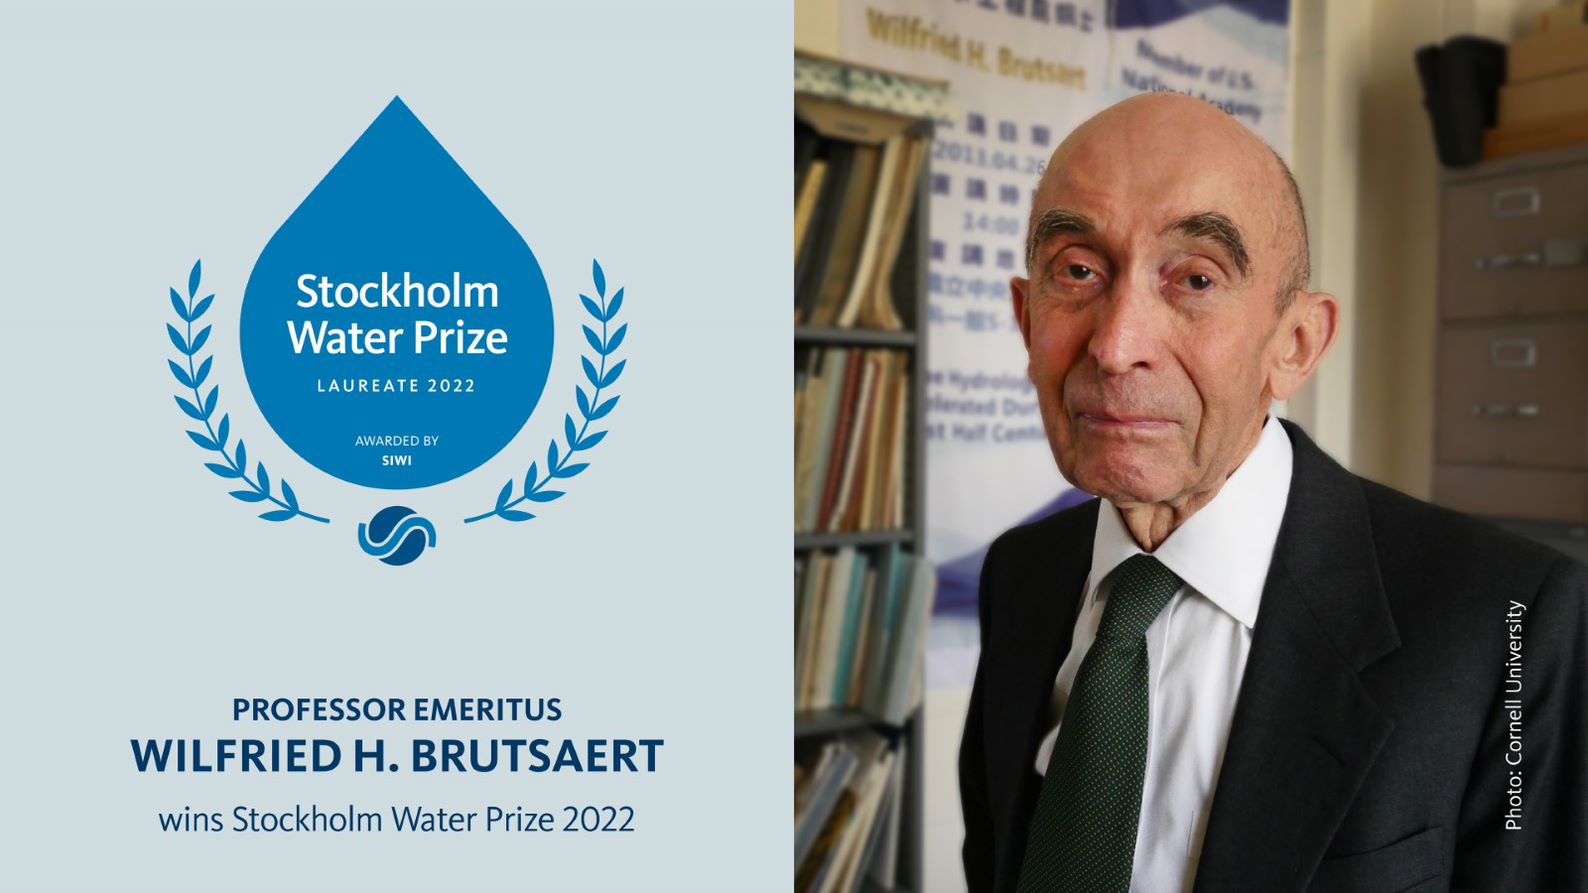 Professor Emeritus Wilfried H. Brusaert wins Stockholm Water Prize 2022